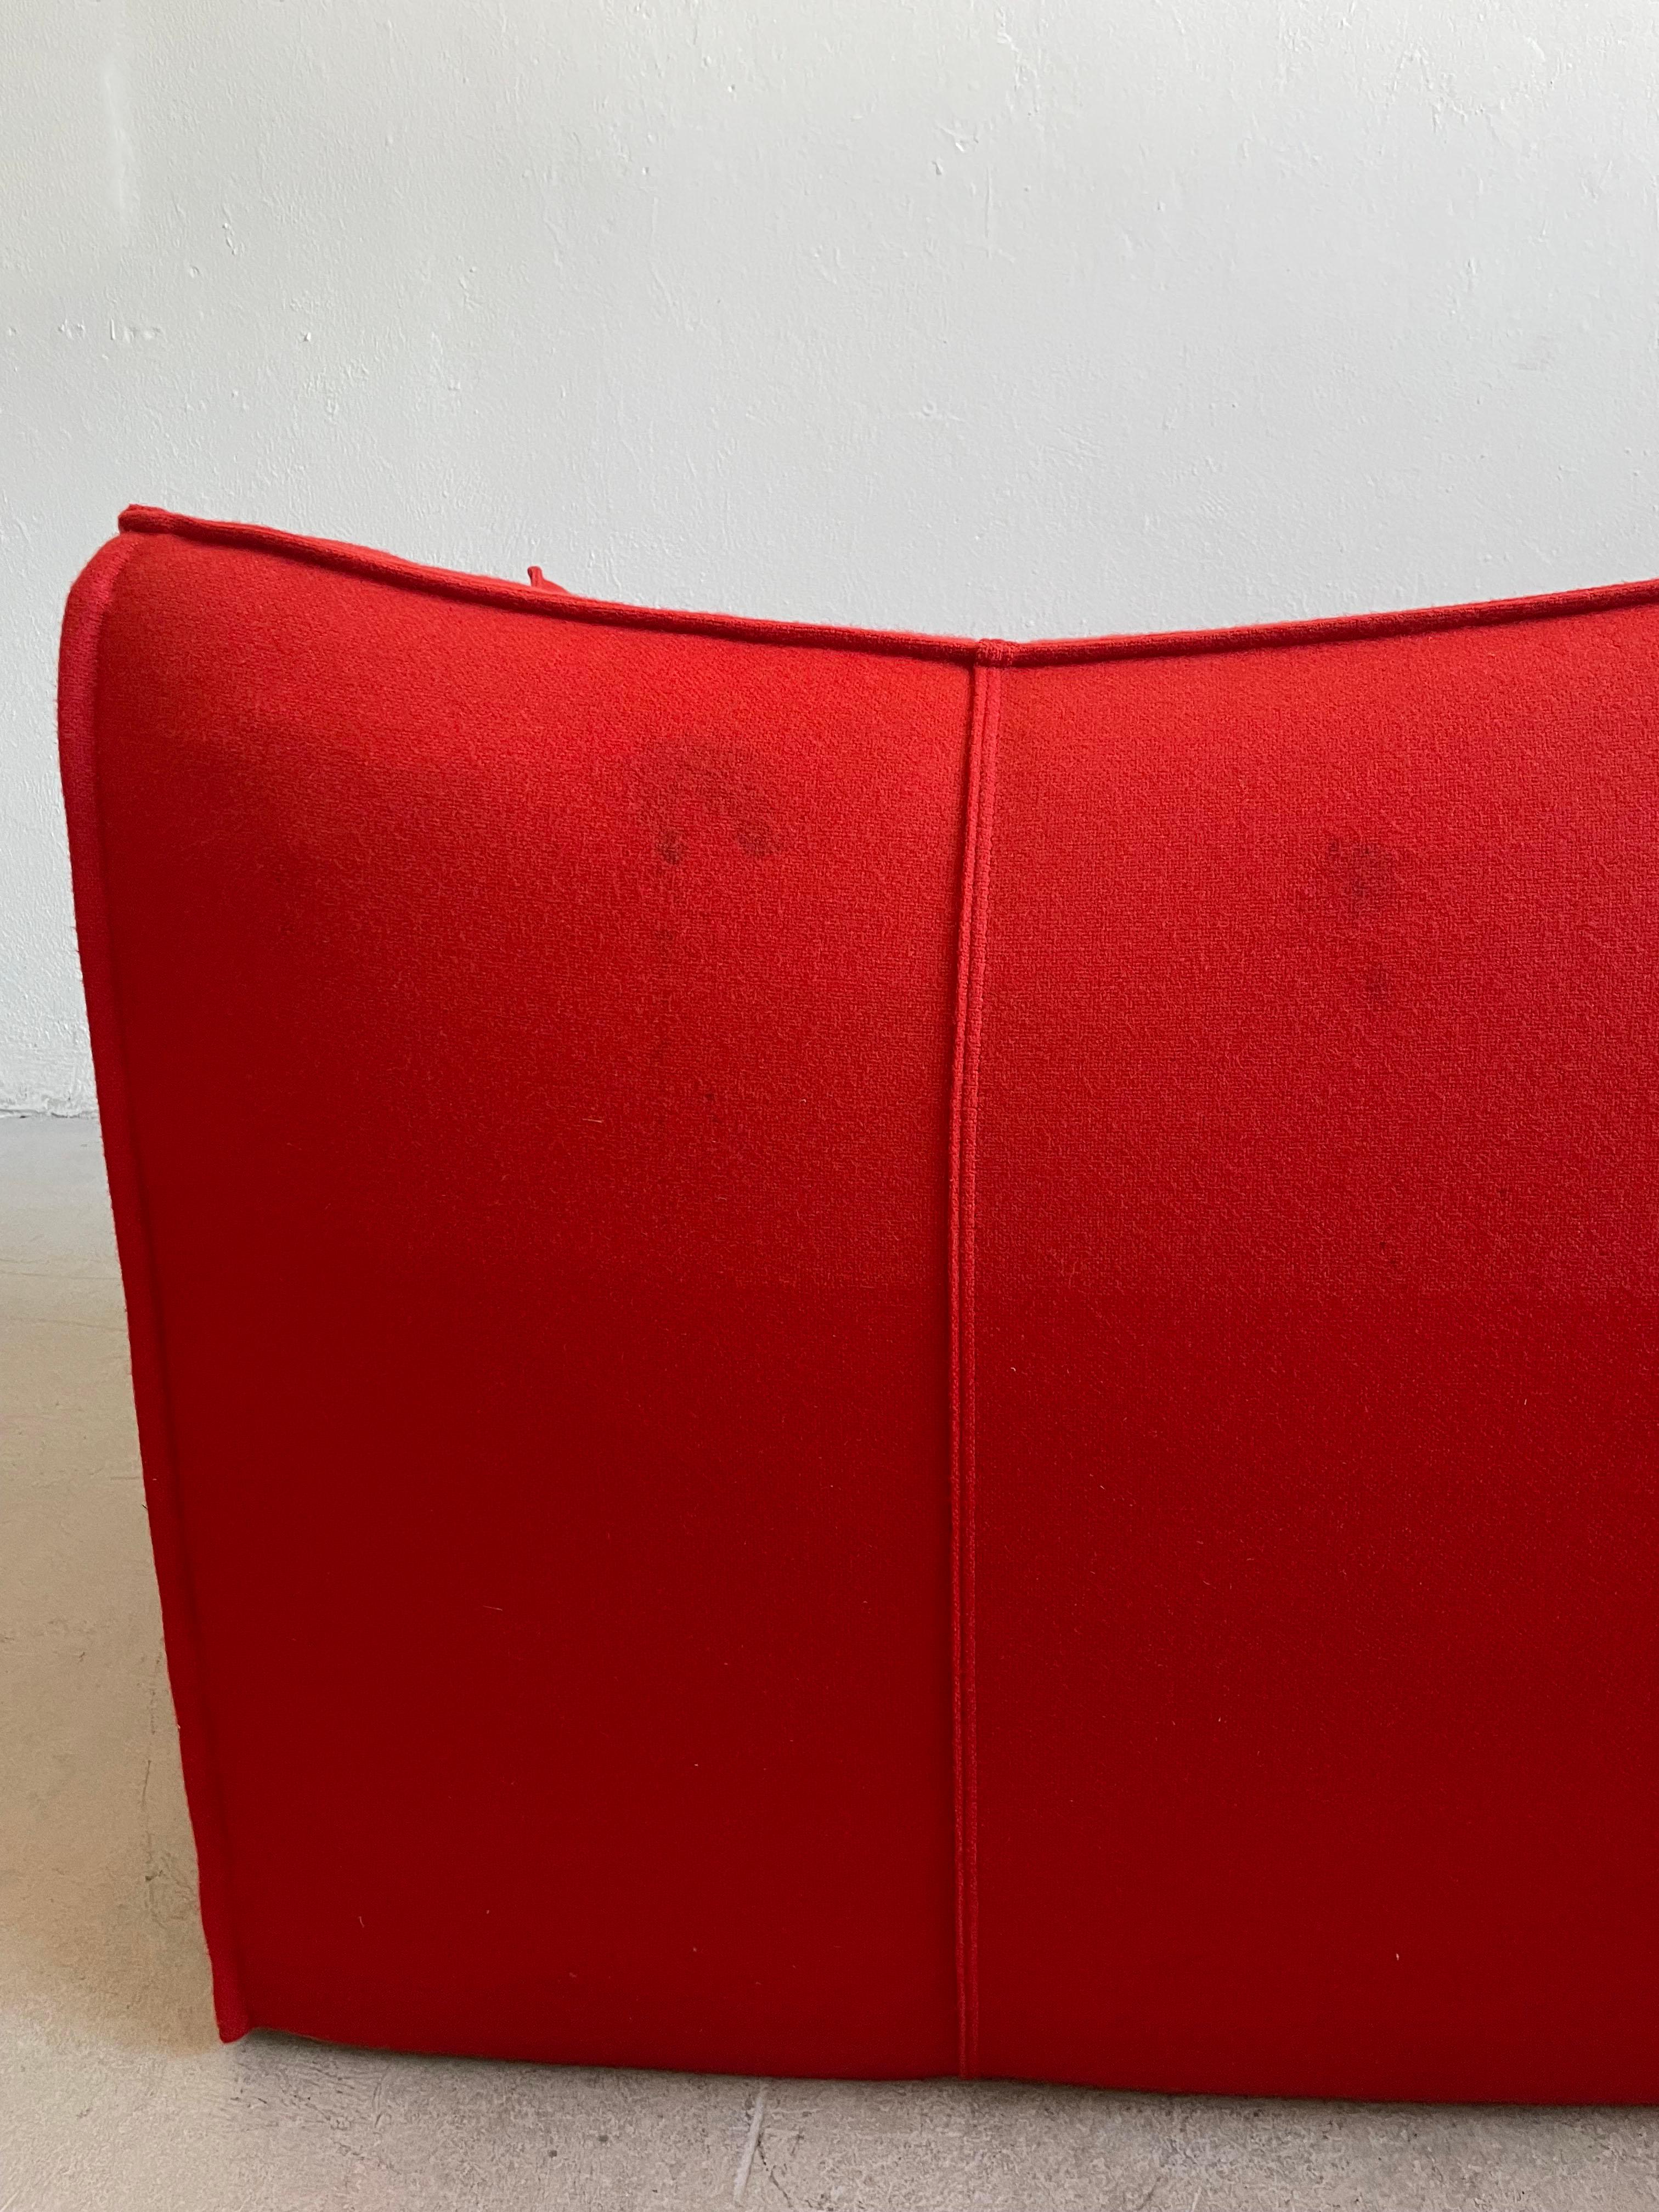 Mario Bellini Le Bambole ’07 Sofa B&B Italia in Red Wool, Removable Cover For Sale 4